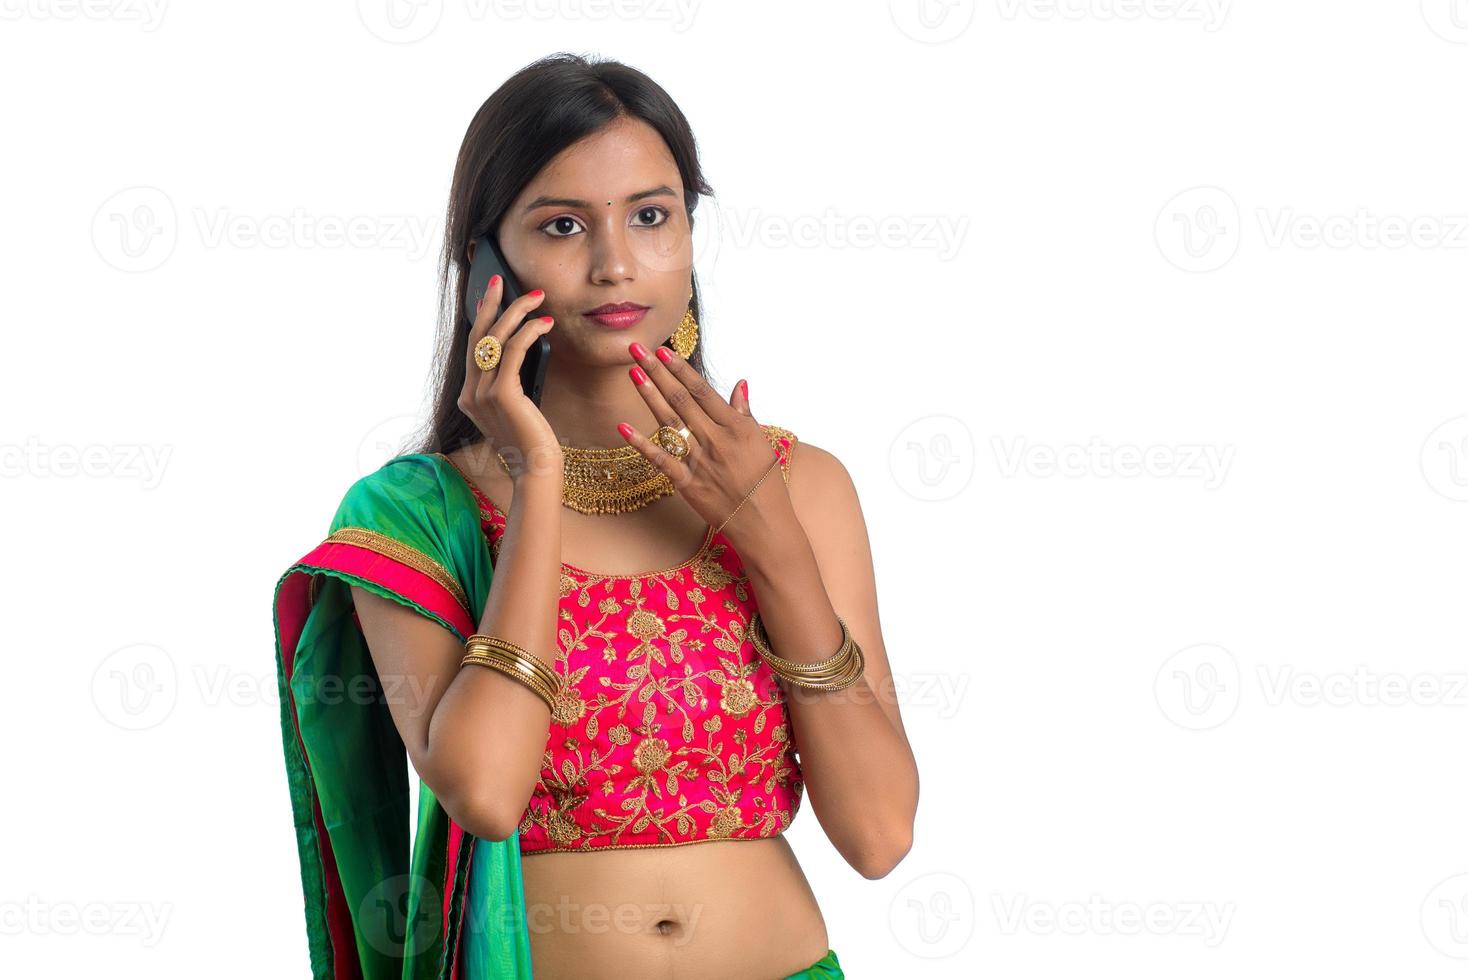 jonge Indiase traditionele meisje met behulp van een mobiele telefoon of smartphone geïsoleerd op een witte achtergrond foto